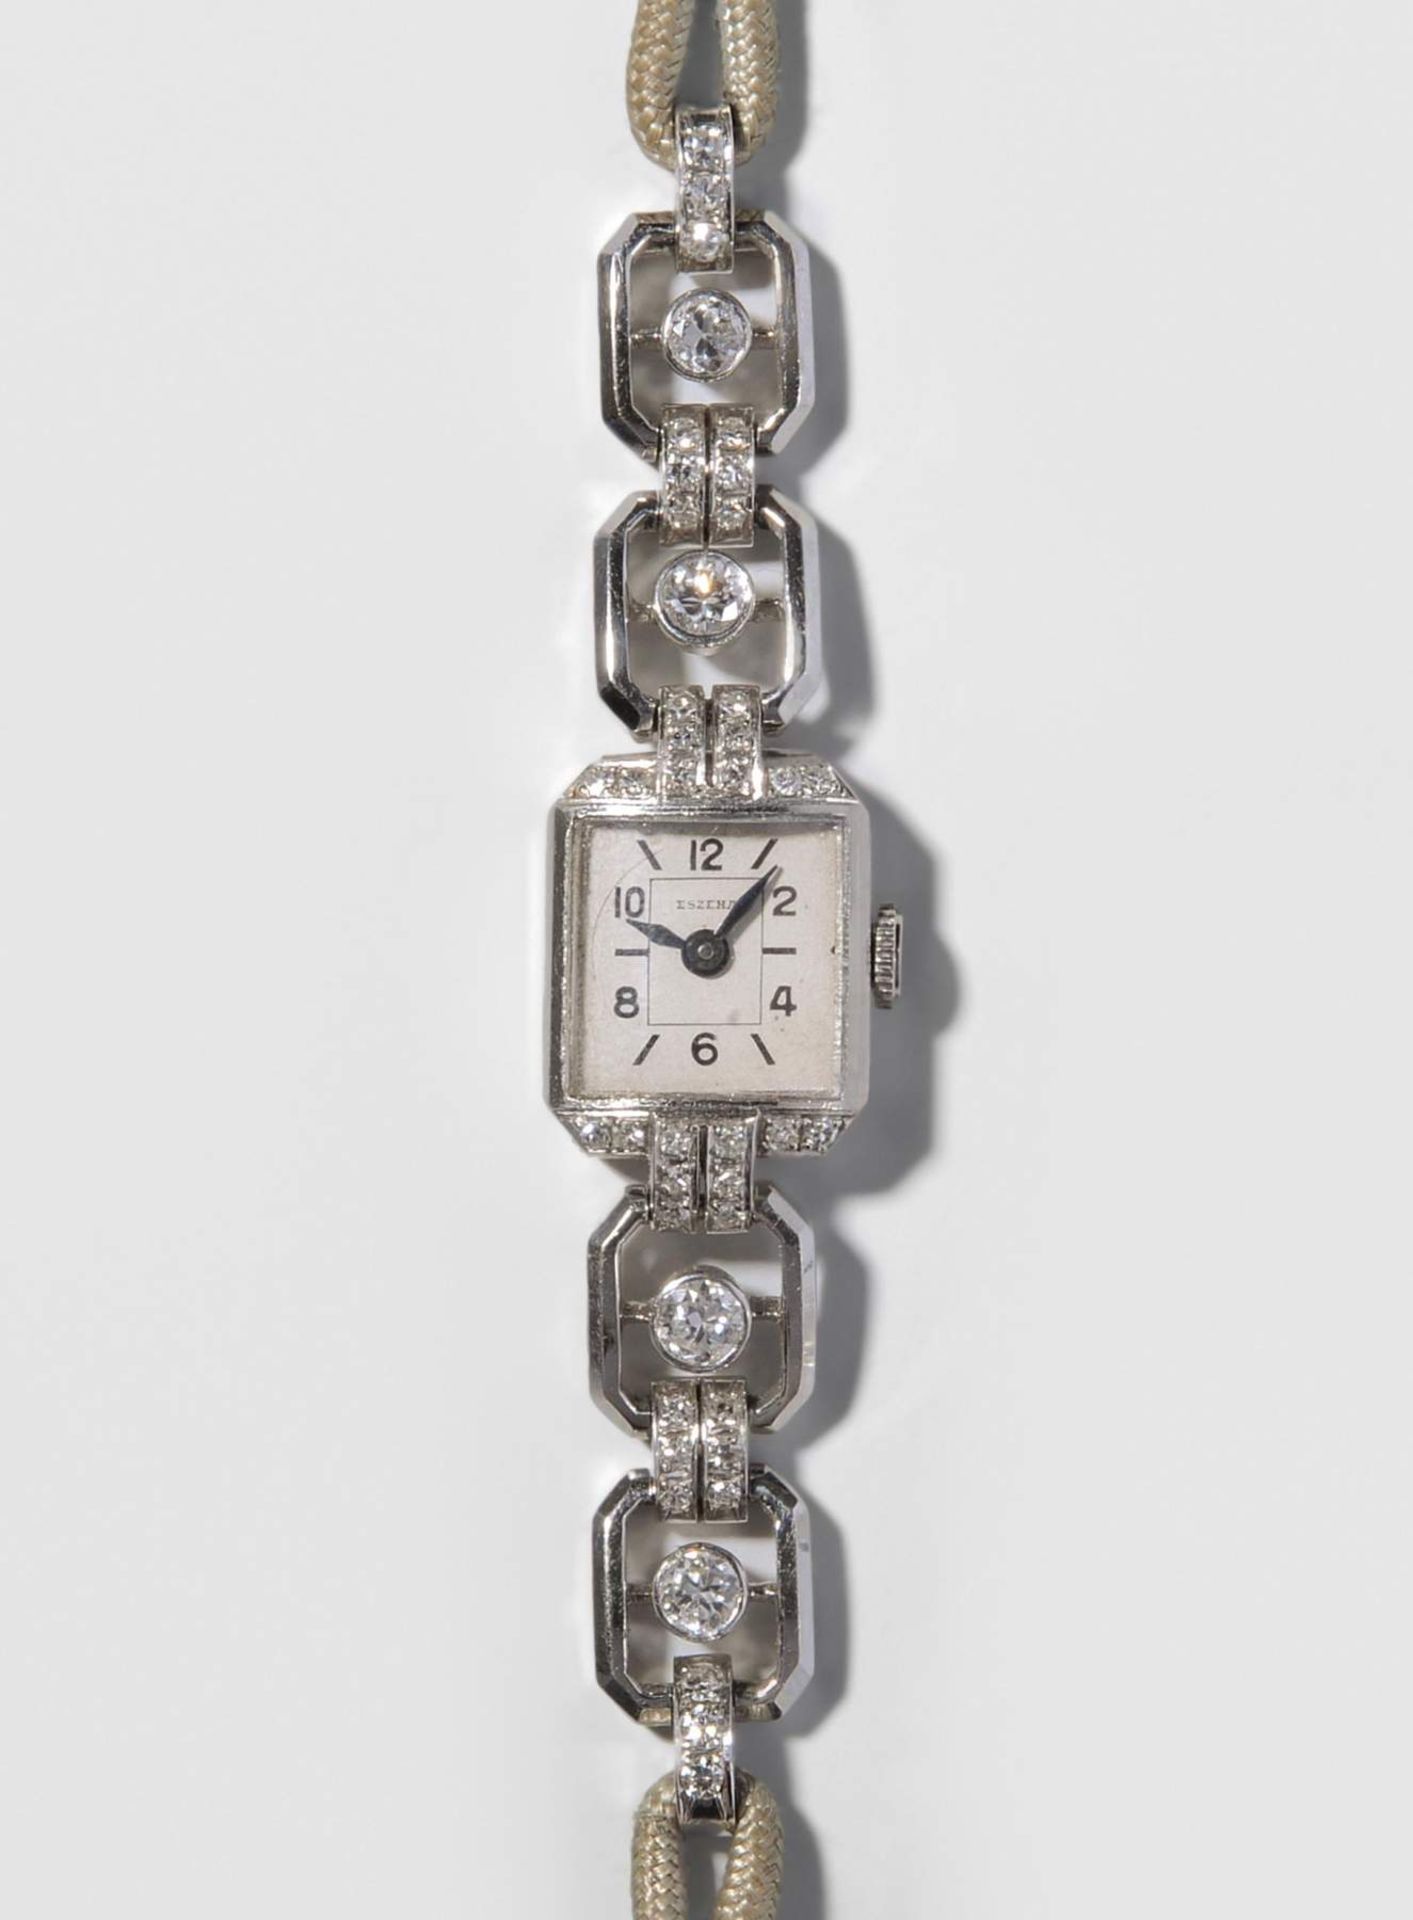 Eszeha Diamant-Armbanduhr
Karl Scheufele, Pforzheim ab 1963 Chopard-Hersteller. 1950er Jahre. 950